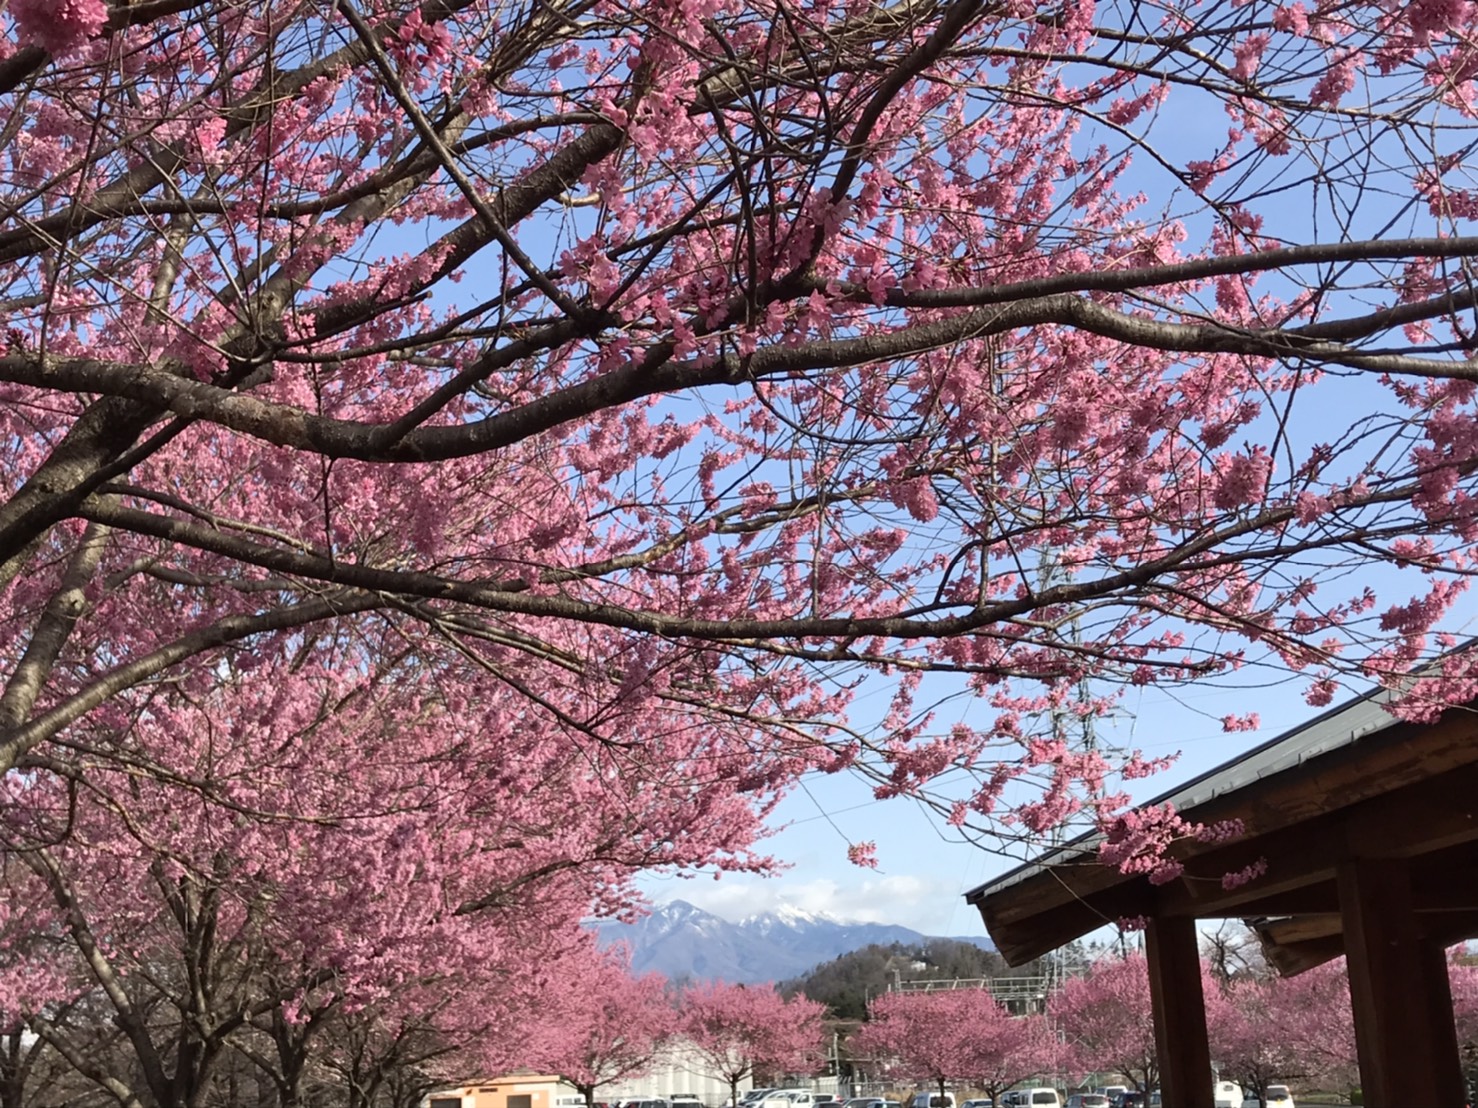 穴山さくら公園の桜